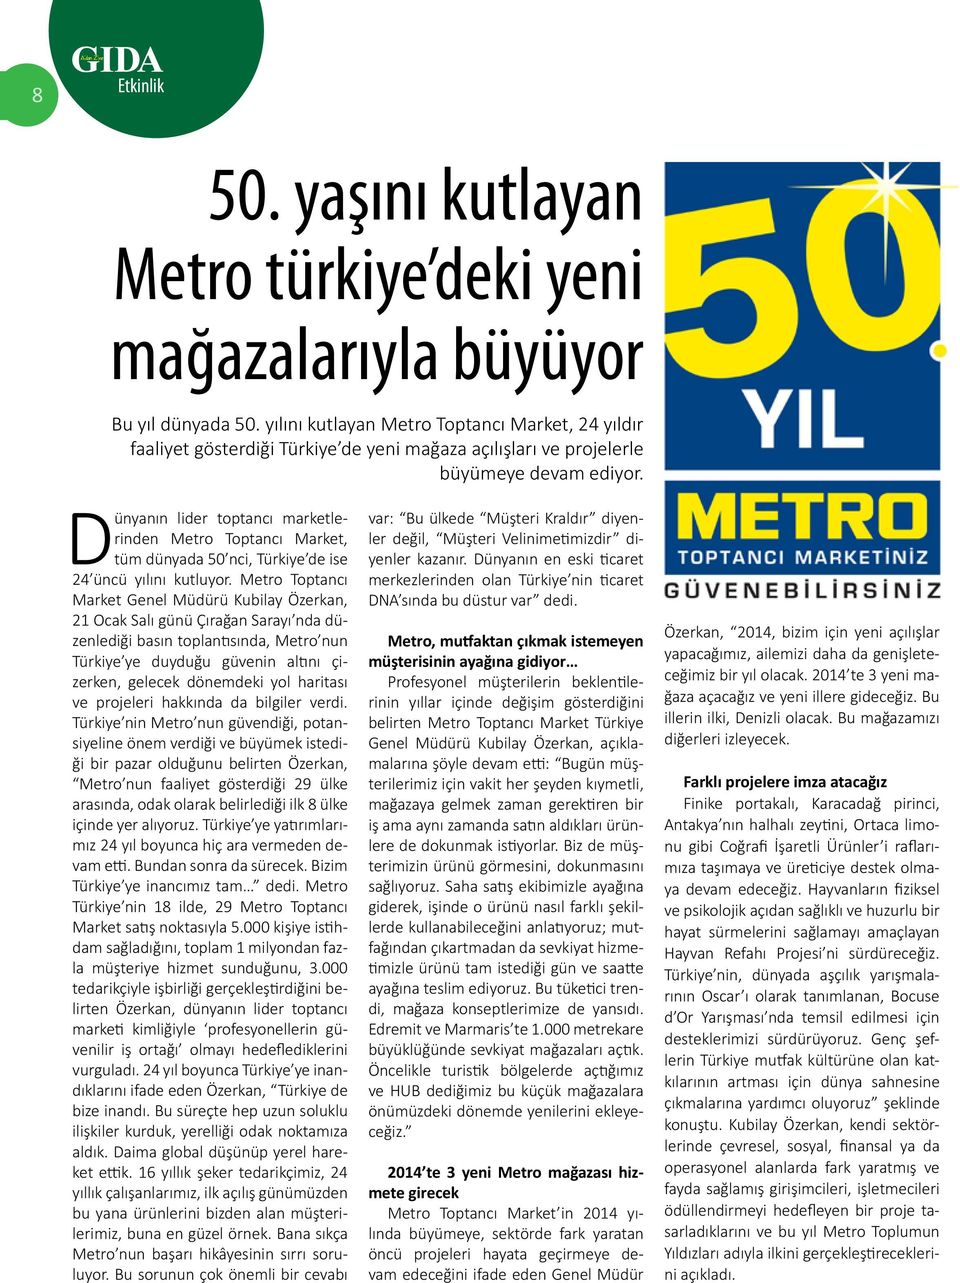 Dünyanın lider toptancı marketlerinden Metro Toptancı Market, tüm dünyada 50 nci, Türkiye de ise 24 üncü yılını kutluyor.